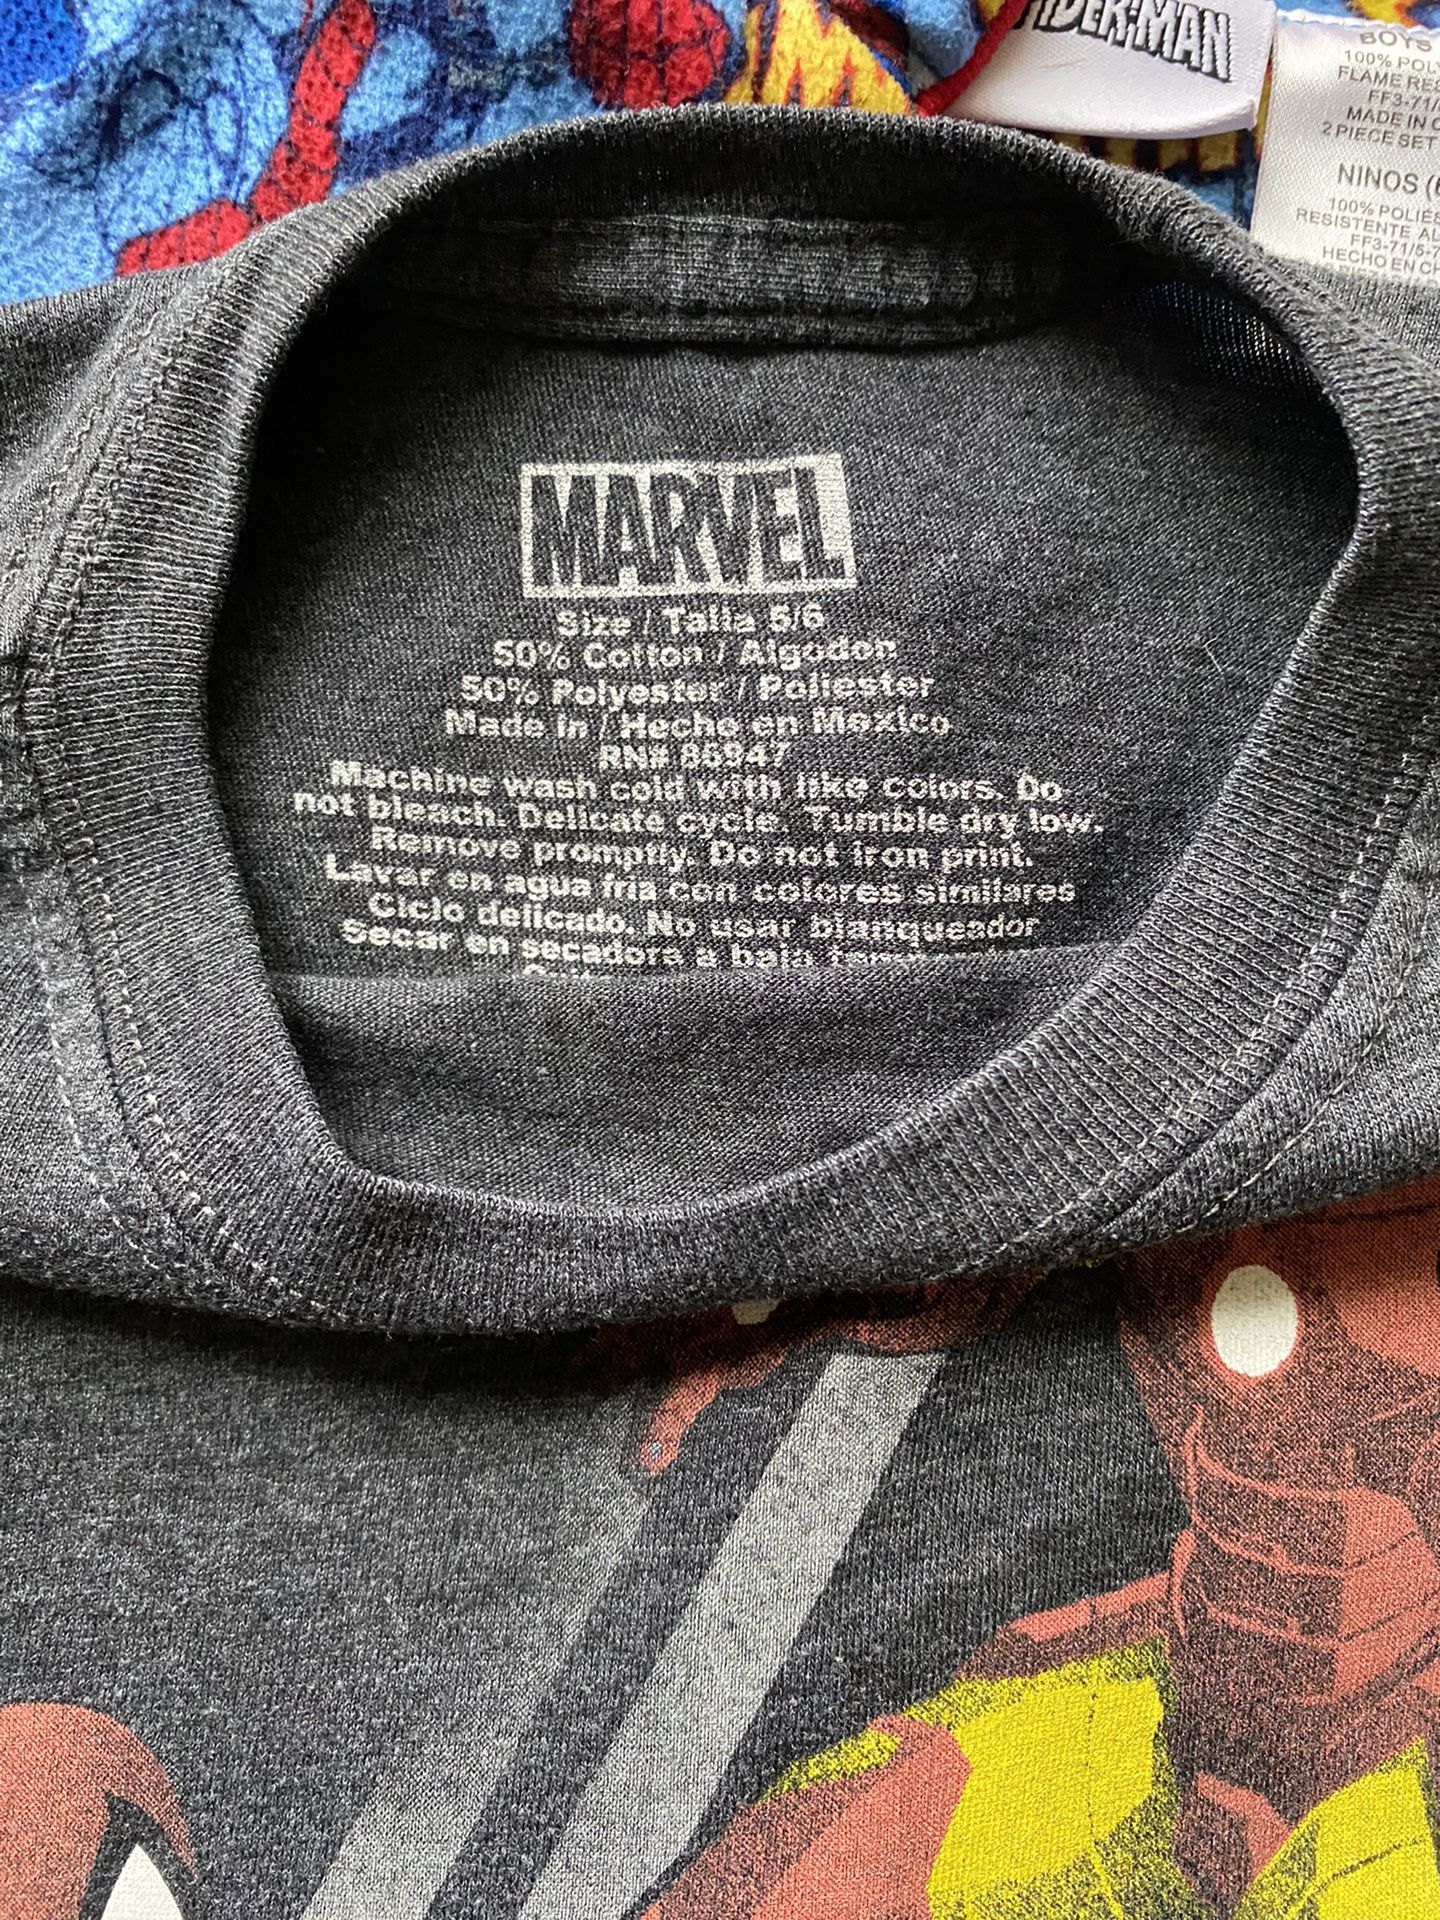 Marvel “Super” Set